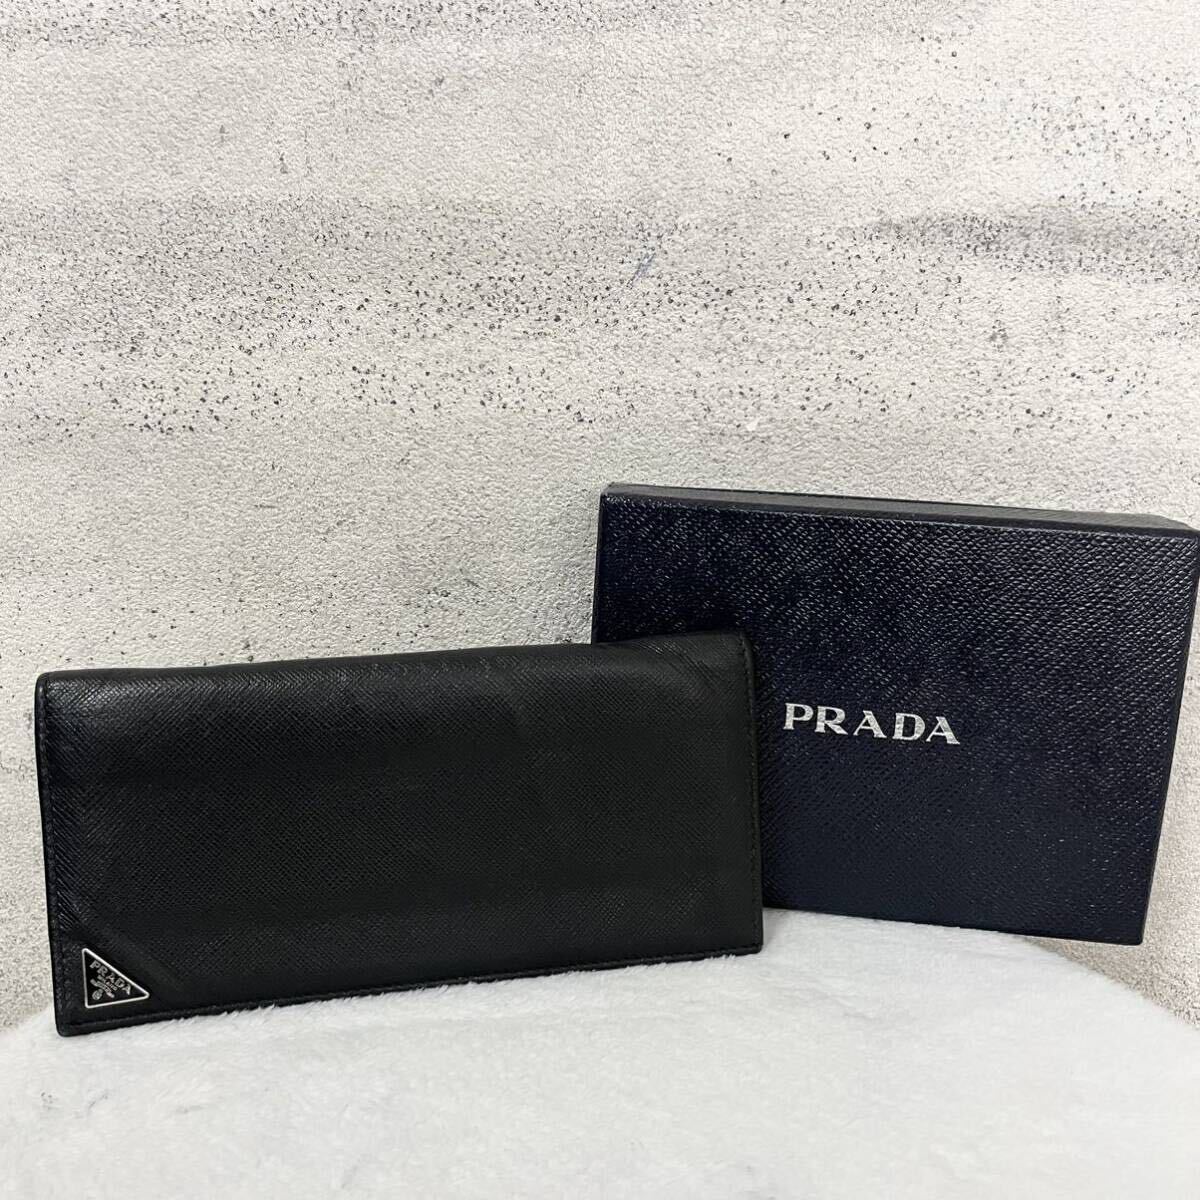 【贅沢品の極み】PRADA プラダ 長財布 カードケース コインケース 三角プレート 本革 レザー サフィアーノ ブラックの画像1